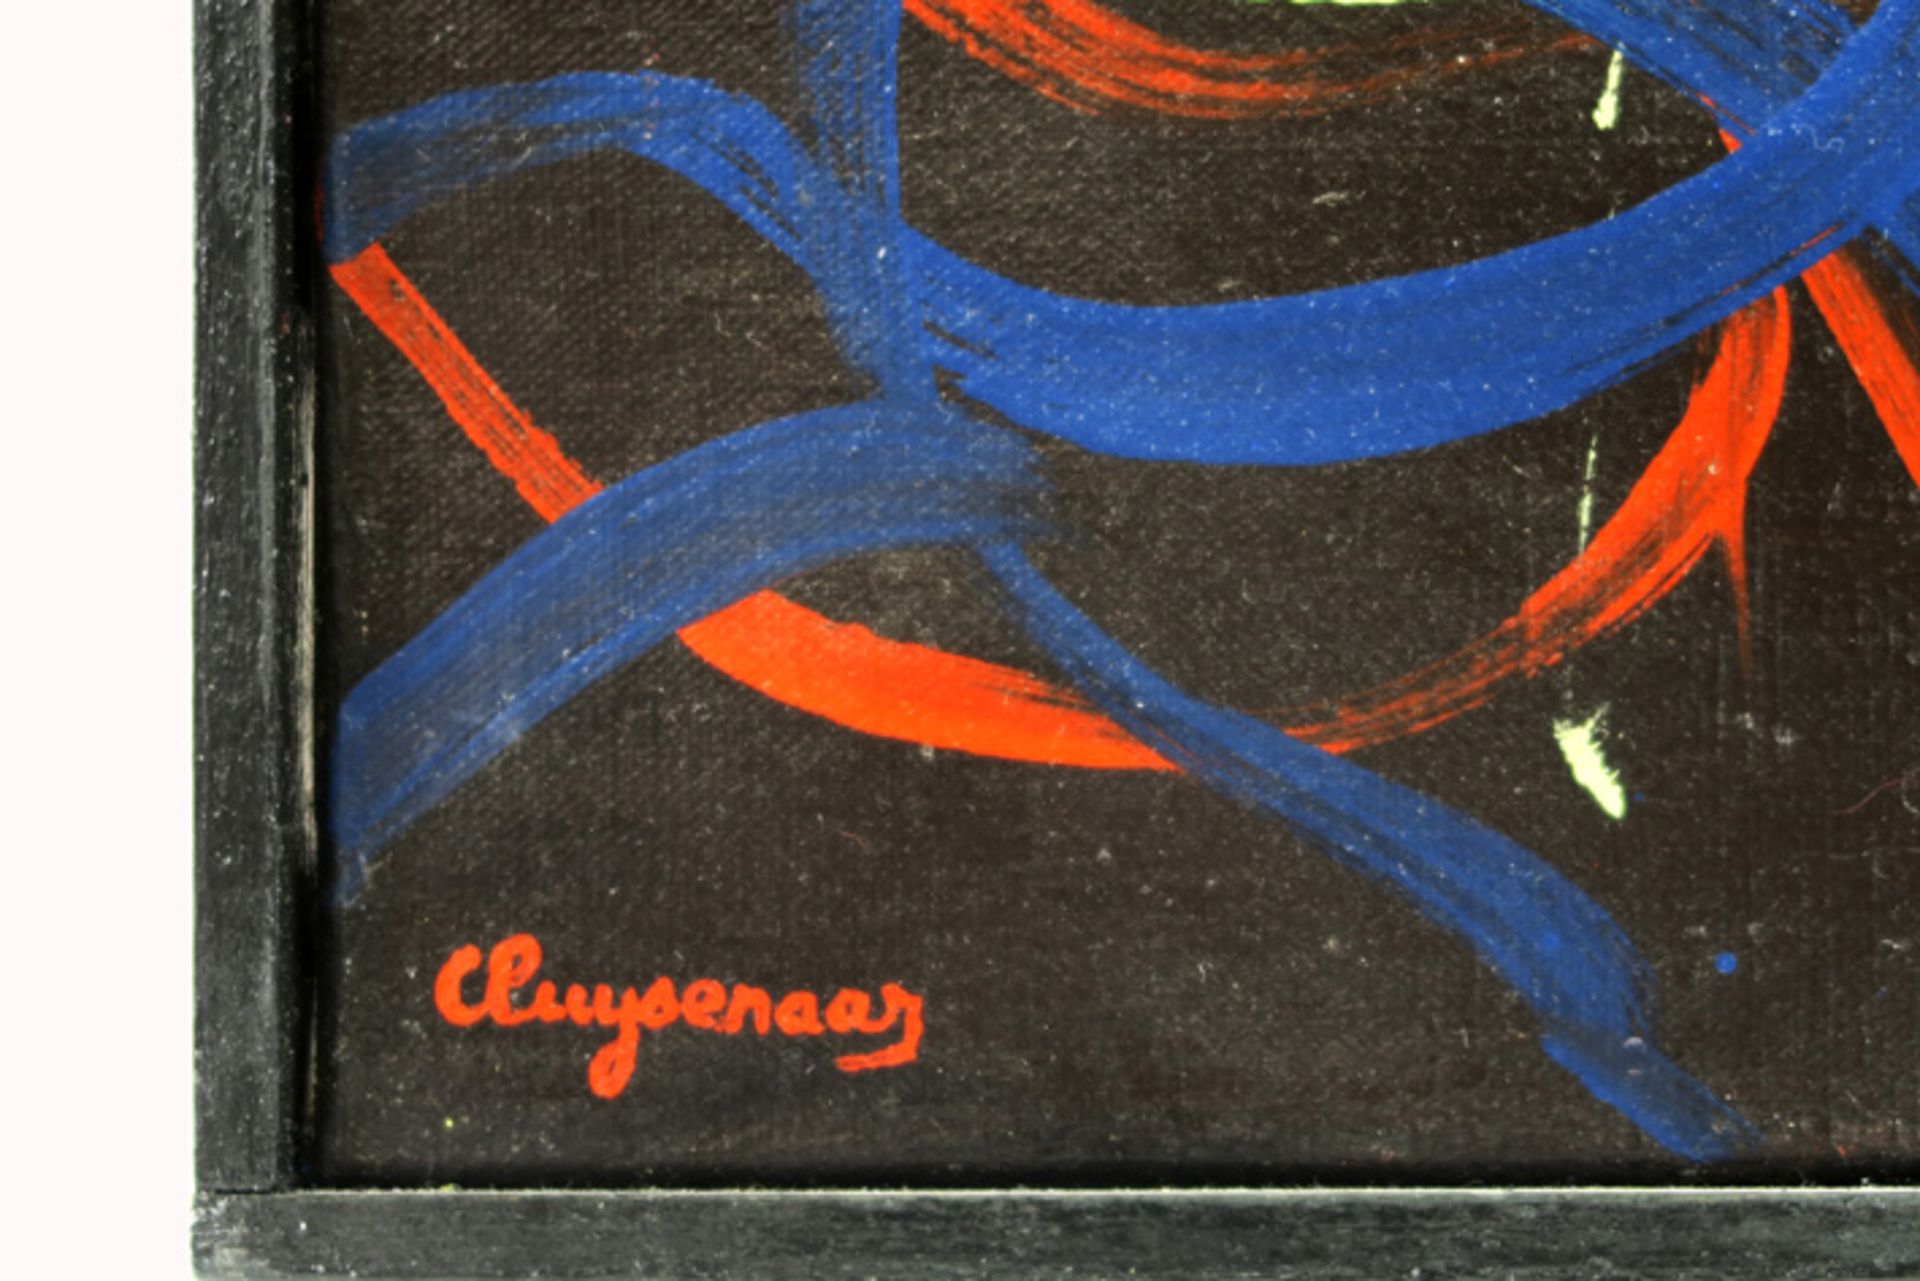 20th Cent CLUYSENAAR JOHN (1899 - 1986) olieverfschilderij op doek : "Abstracte compositie" - 60 x - Bild 3 aus 5